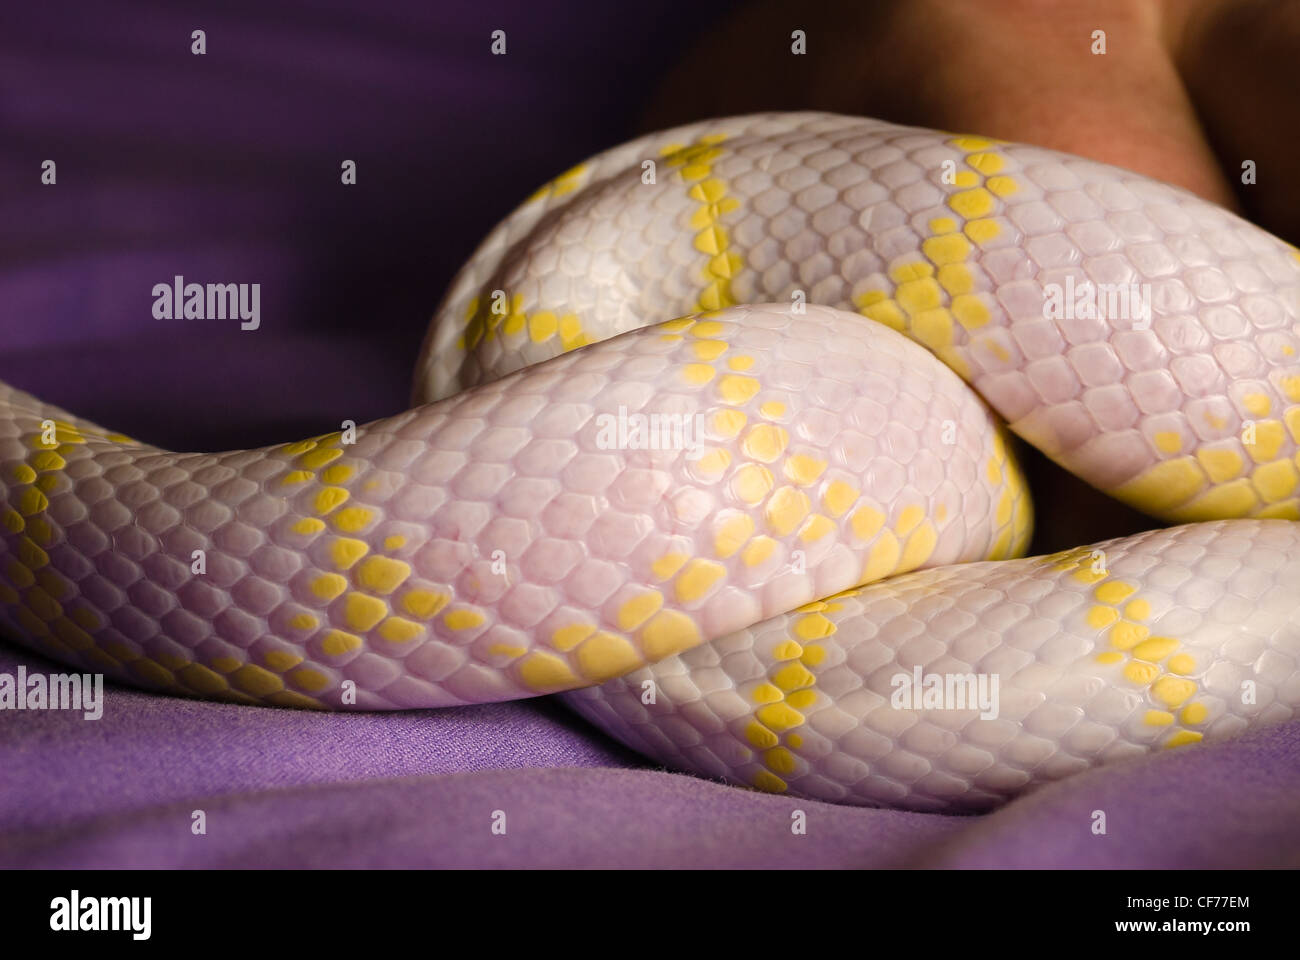 Una serpiente rey de California - albino Foto de stock